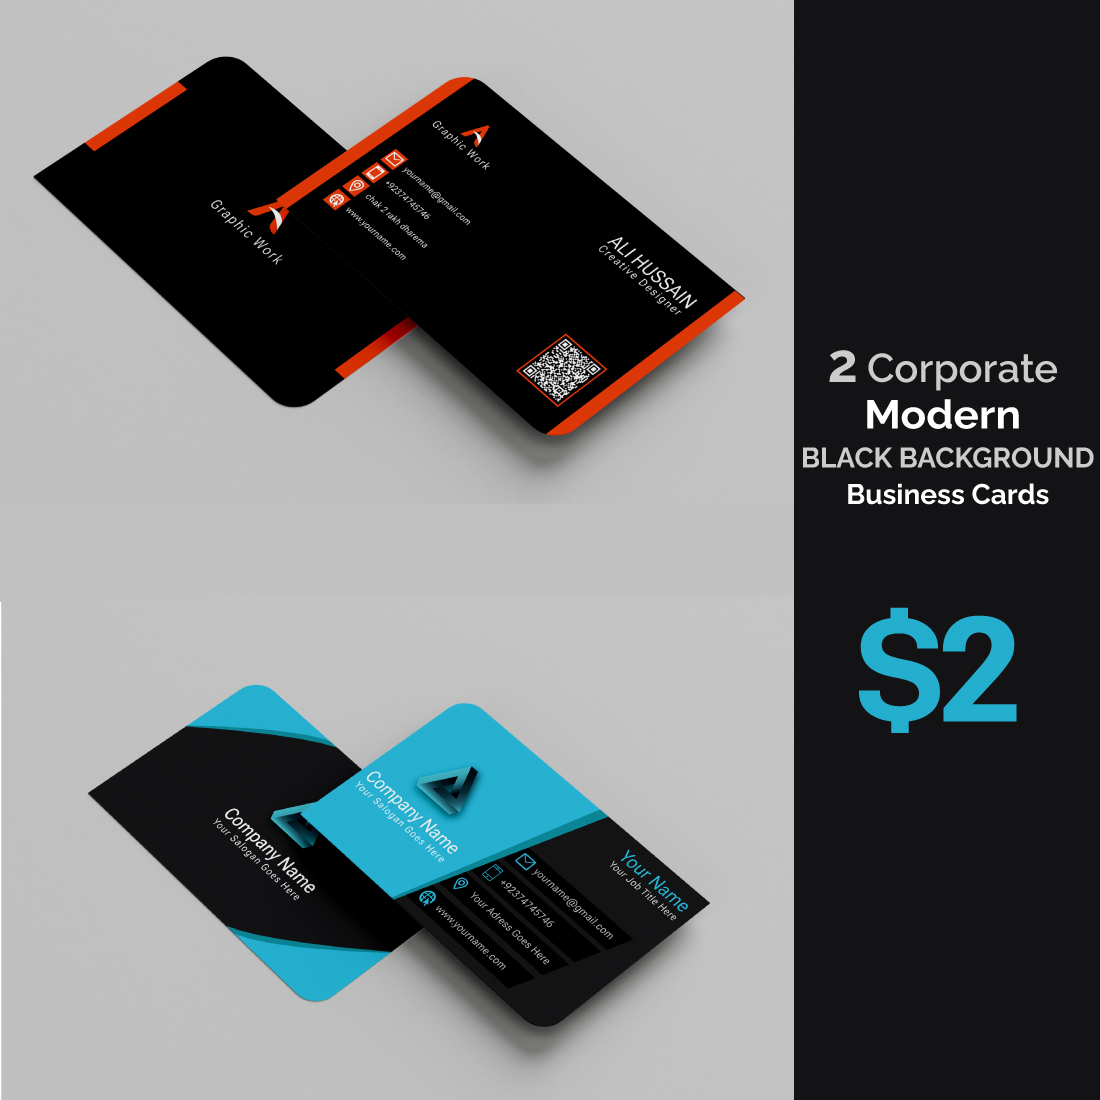 Modern Black Background Business Cards - MasterBundles